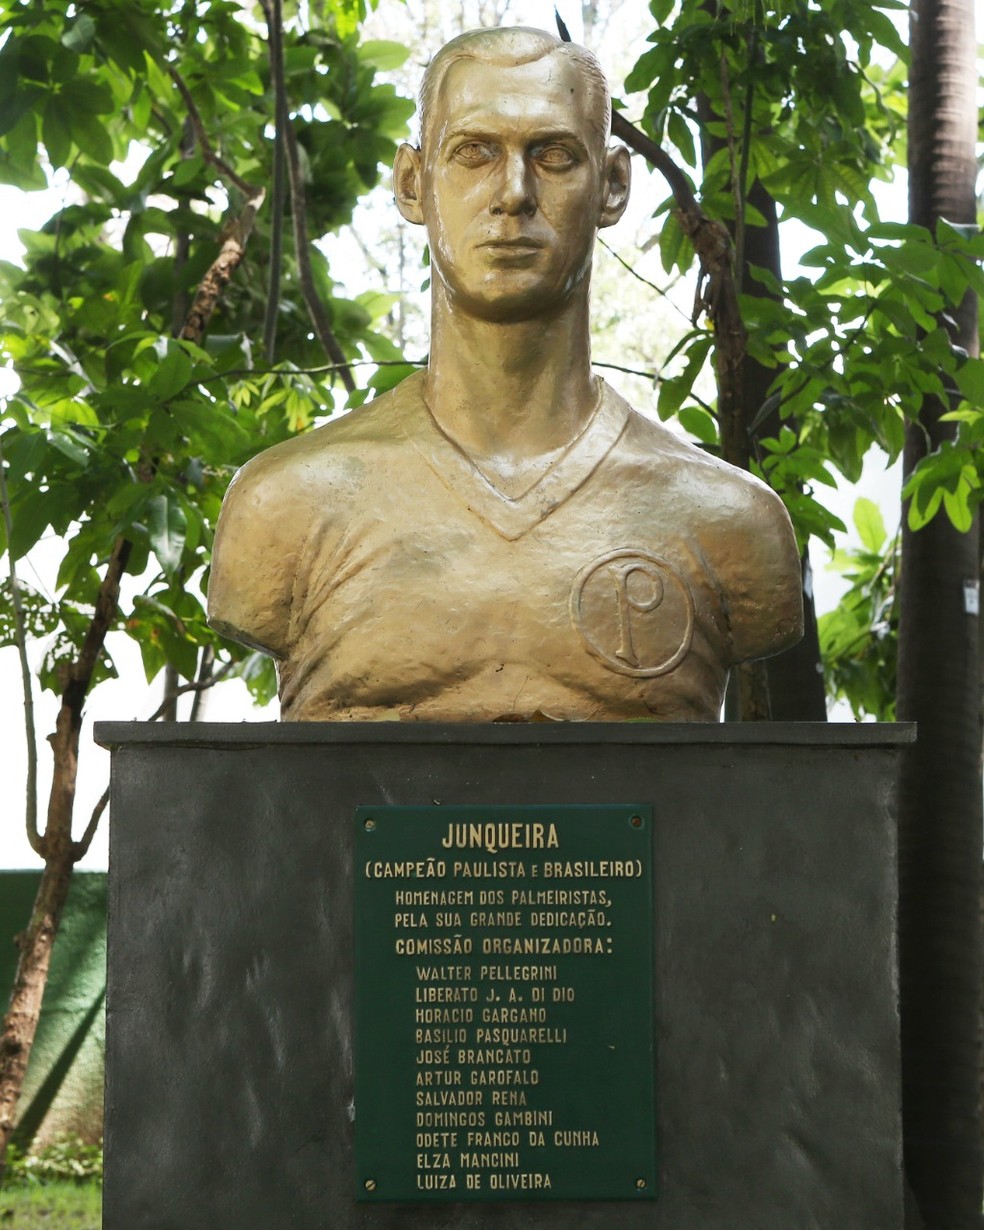 Ídolo e goleador, ex-jogador do Palmeiras recebe grande homenagem